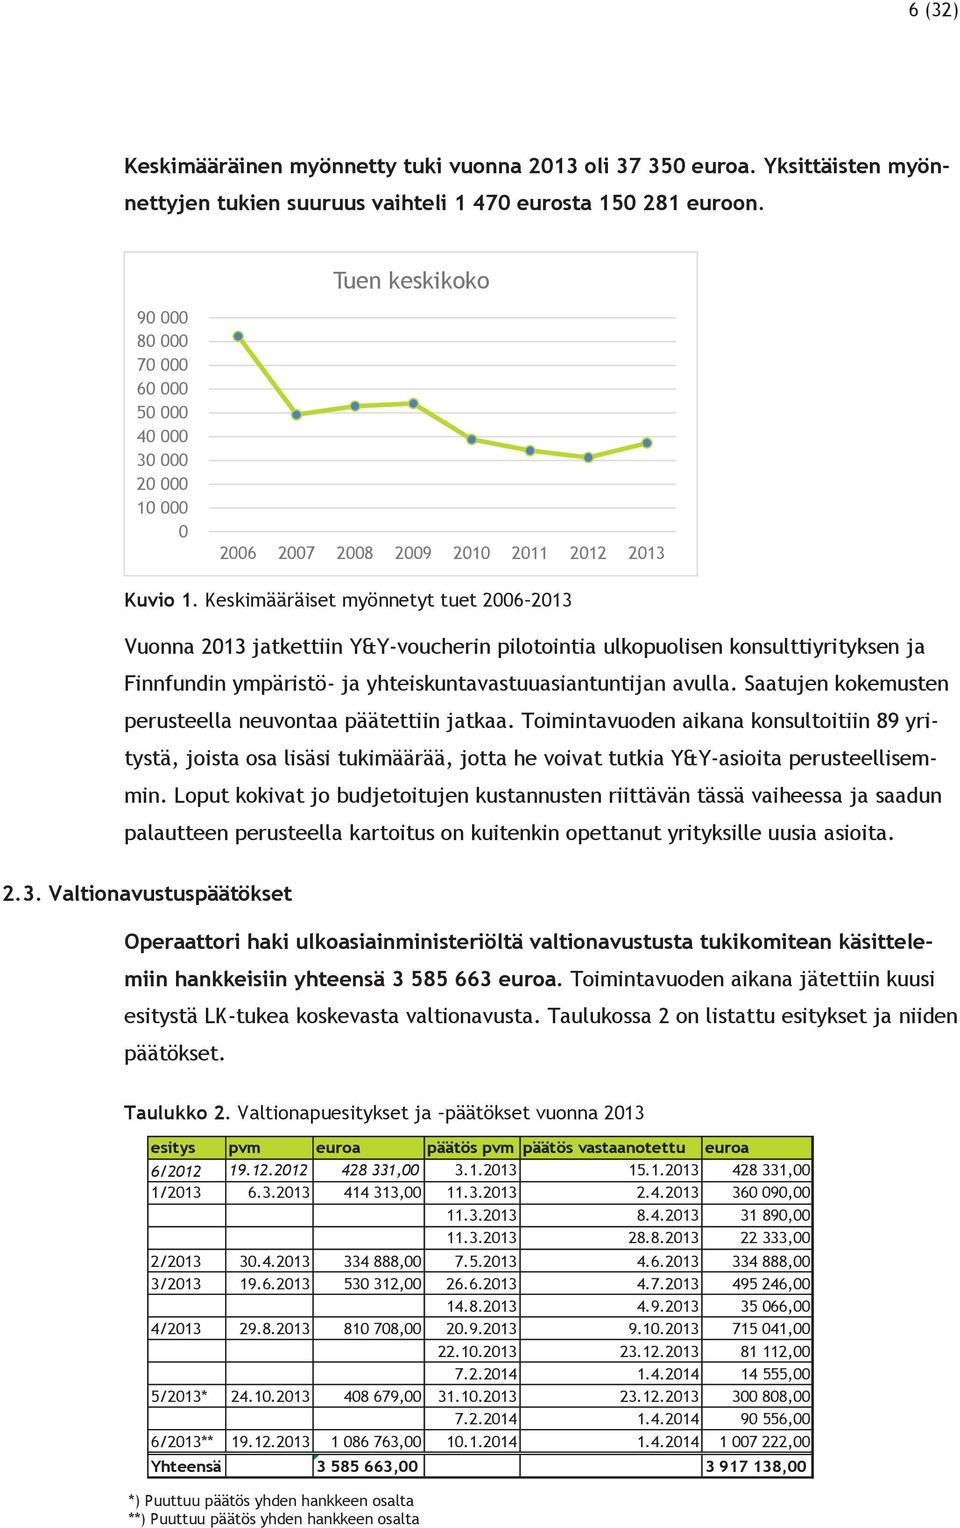 Keskimääräiset myönnetyt tuet 2006 2013 Vuonna 2013 jatkettiin Y&Y-voucherin pilotointia ulkopuolisen konsulttiyrityksen ja Finnfundin ympäristö- ja yhteiskuntavastuuasiantuntijan avulla.